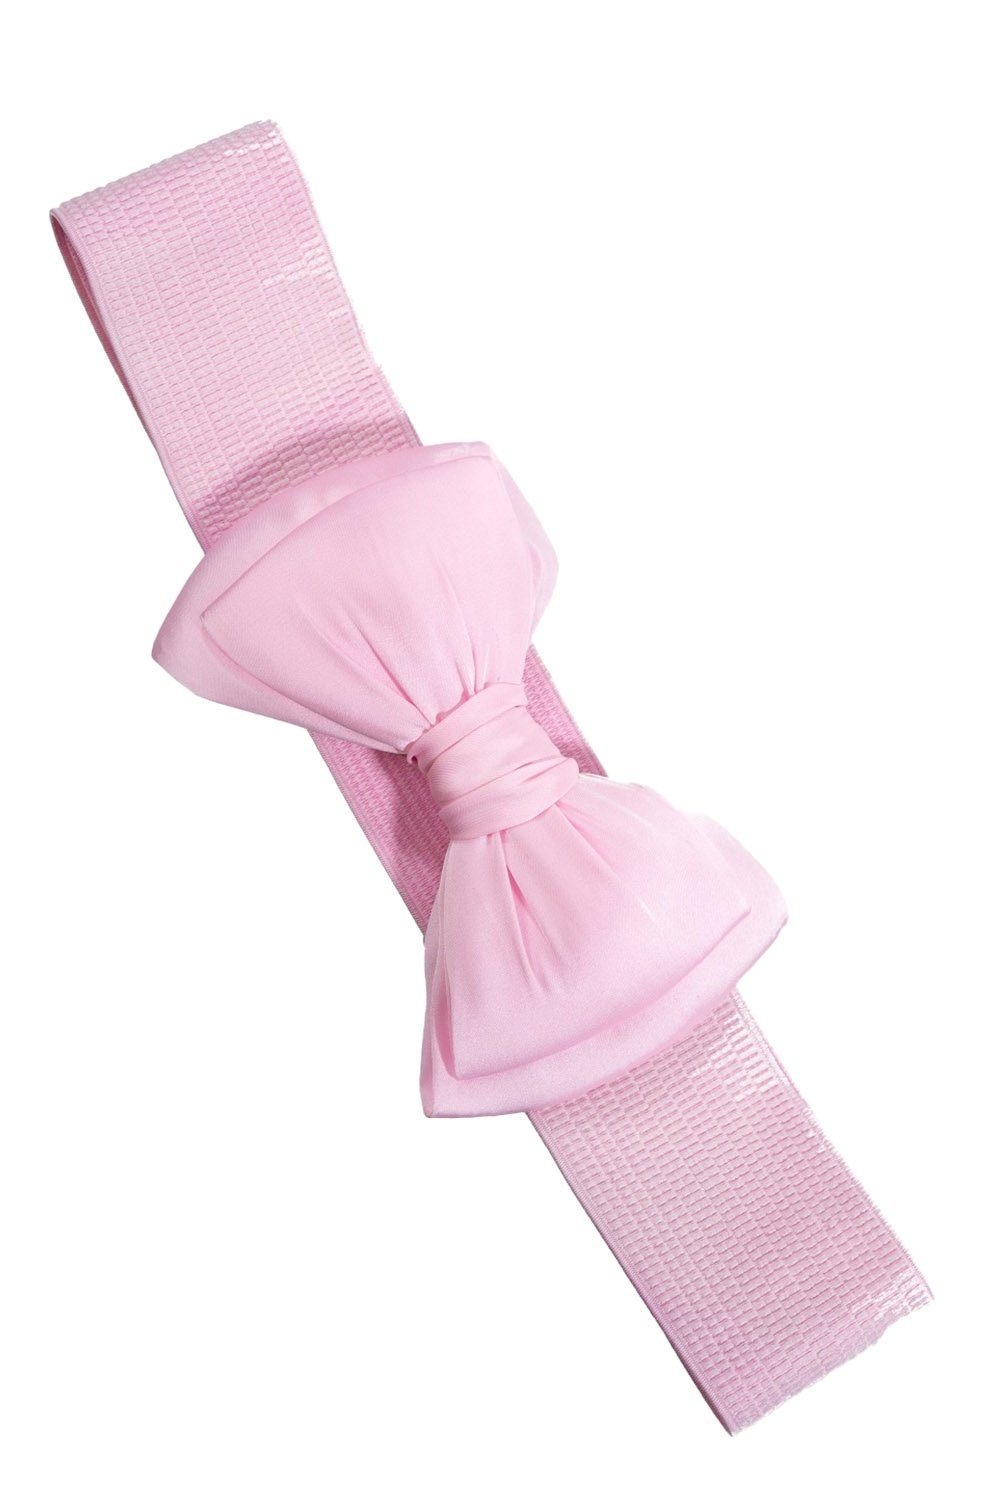 Bella Vintage Stretchgürtel Banned Taillengürtel Rosa Belt Retro Schleife